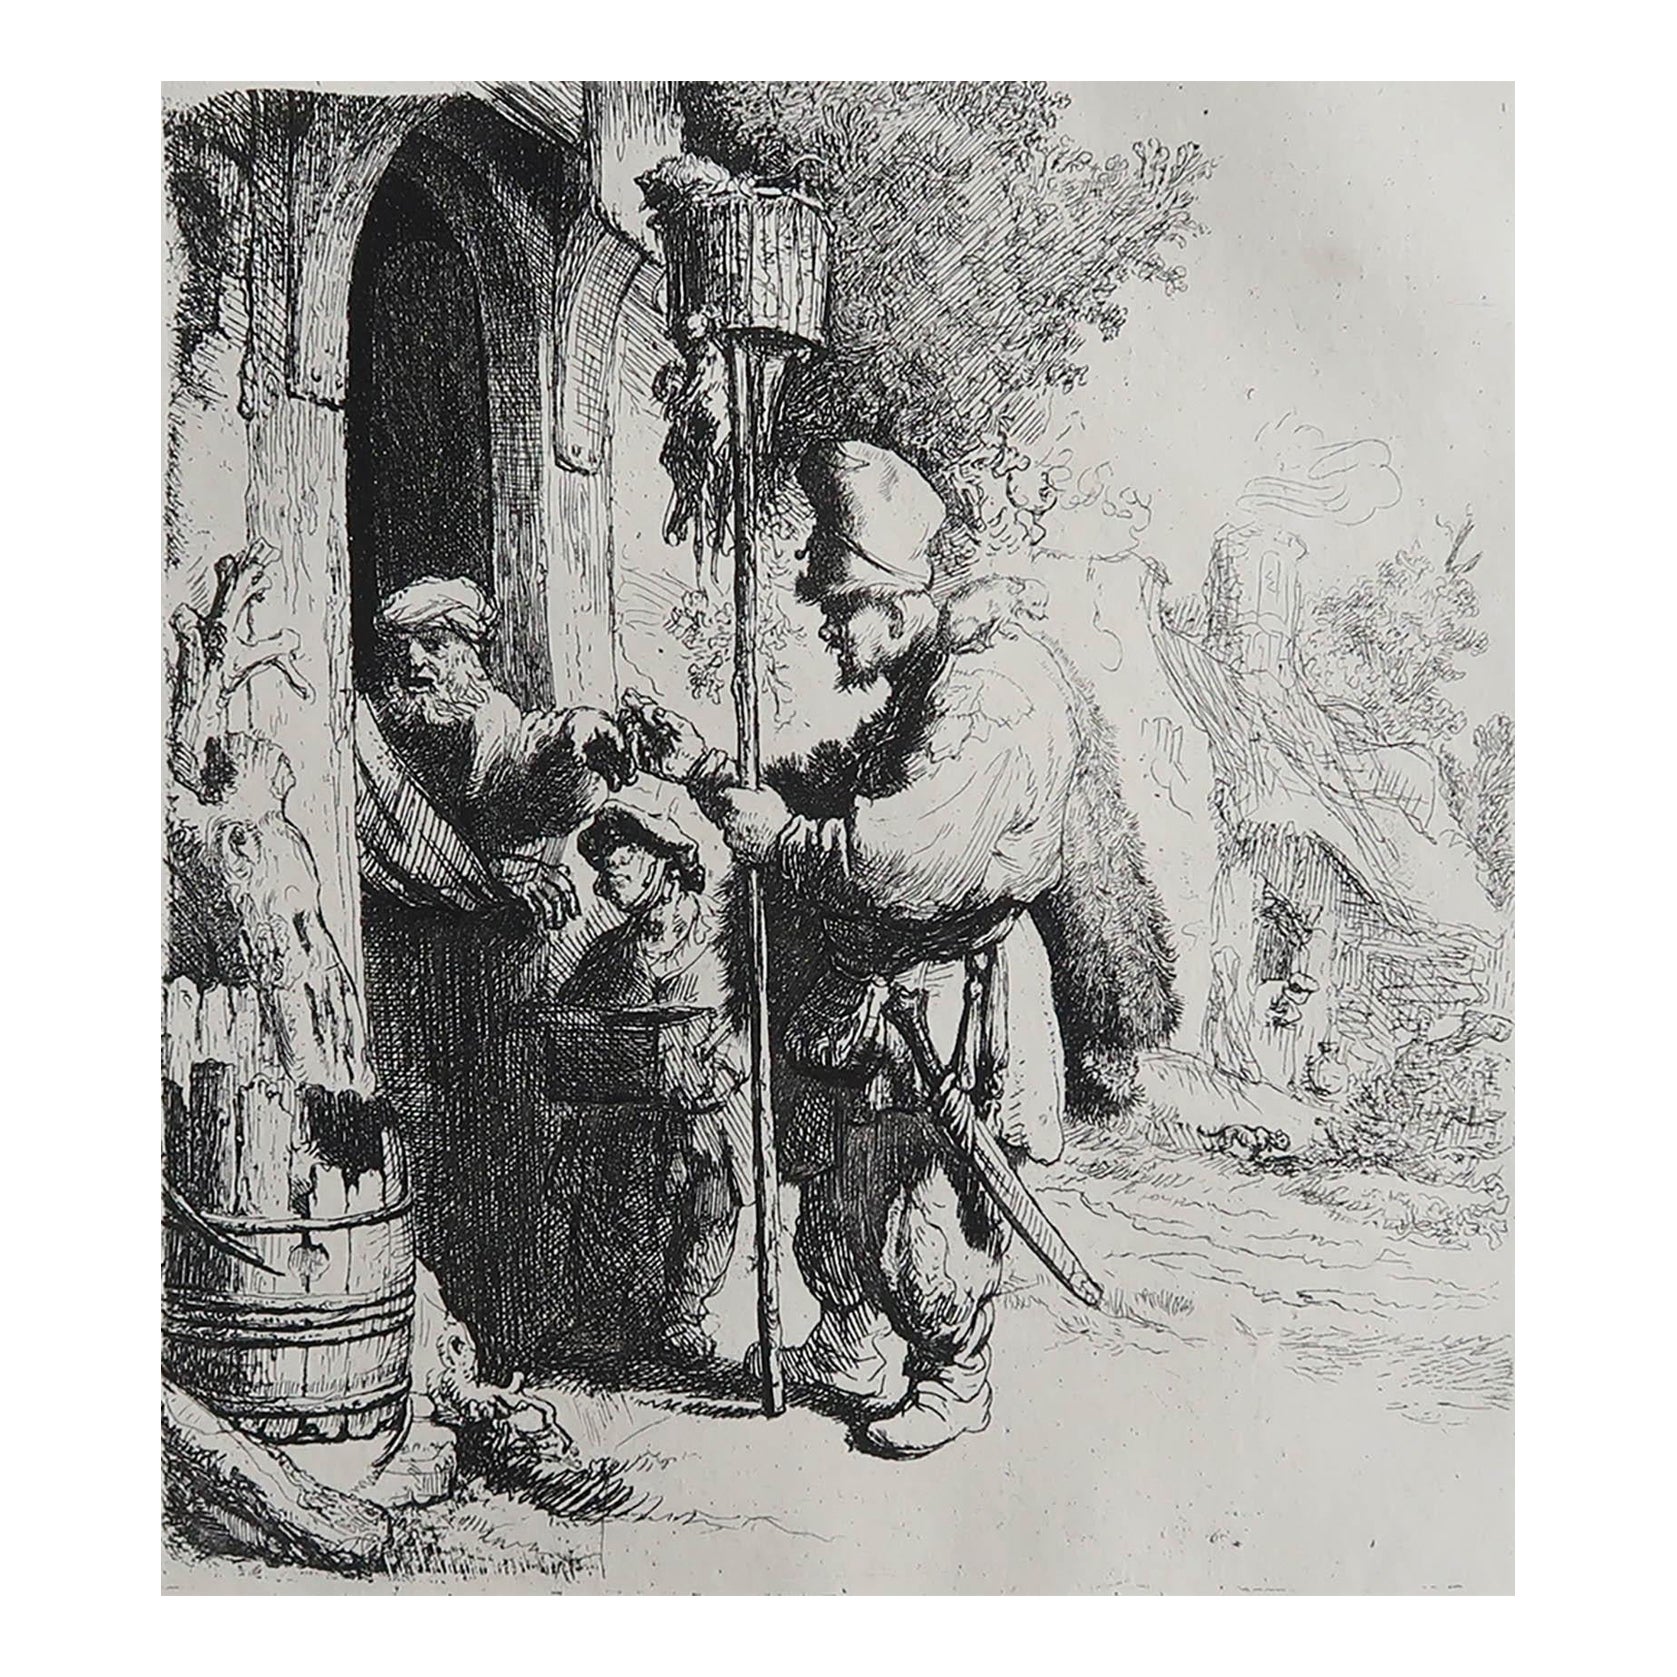 Gravure ancienne originale d'A.Durand d'après Rembrandt. C.1900